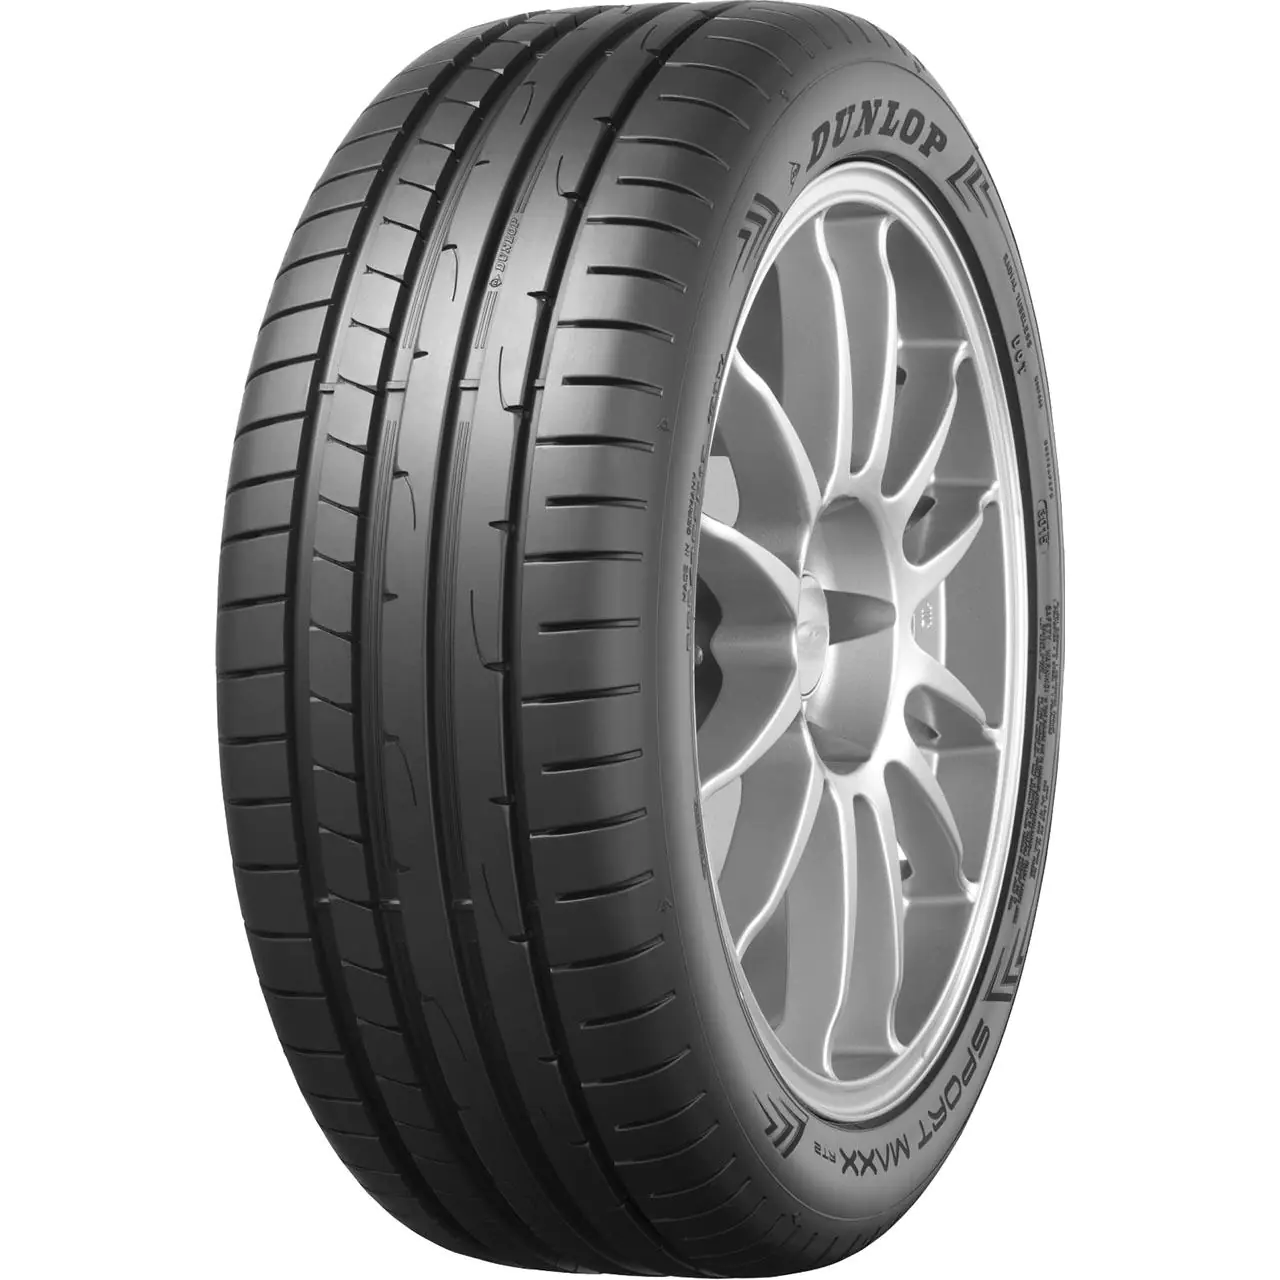 Dunlop Dunlop 225/45 R17 94W SP.MAXX RT2 * XL pneumatici nuovi Estivo 